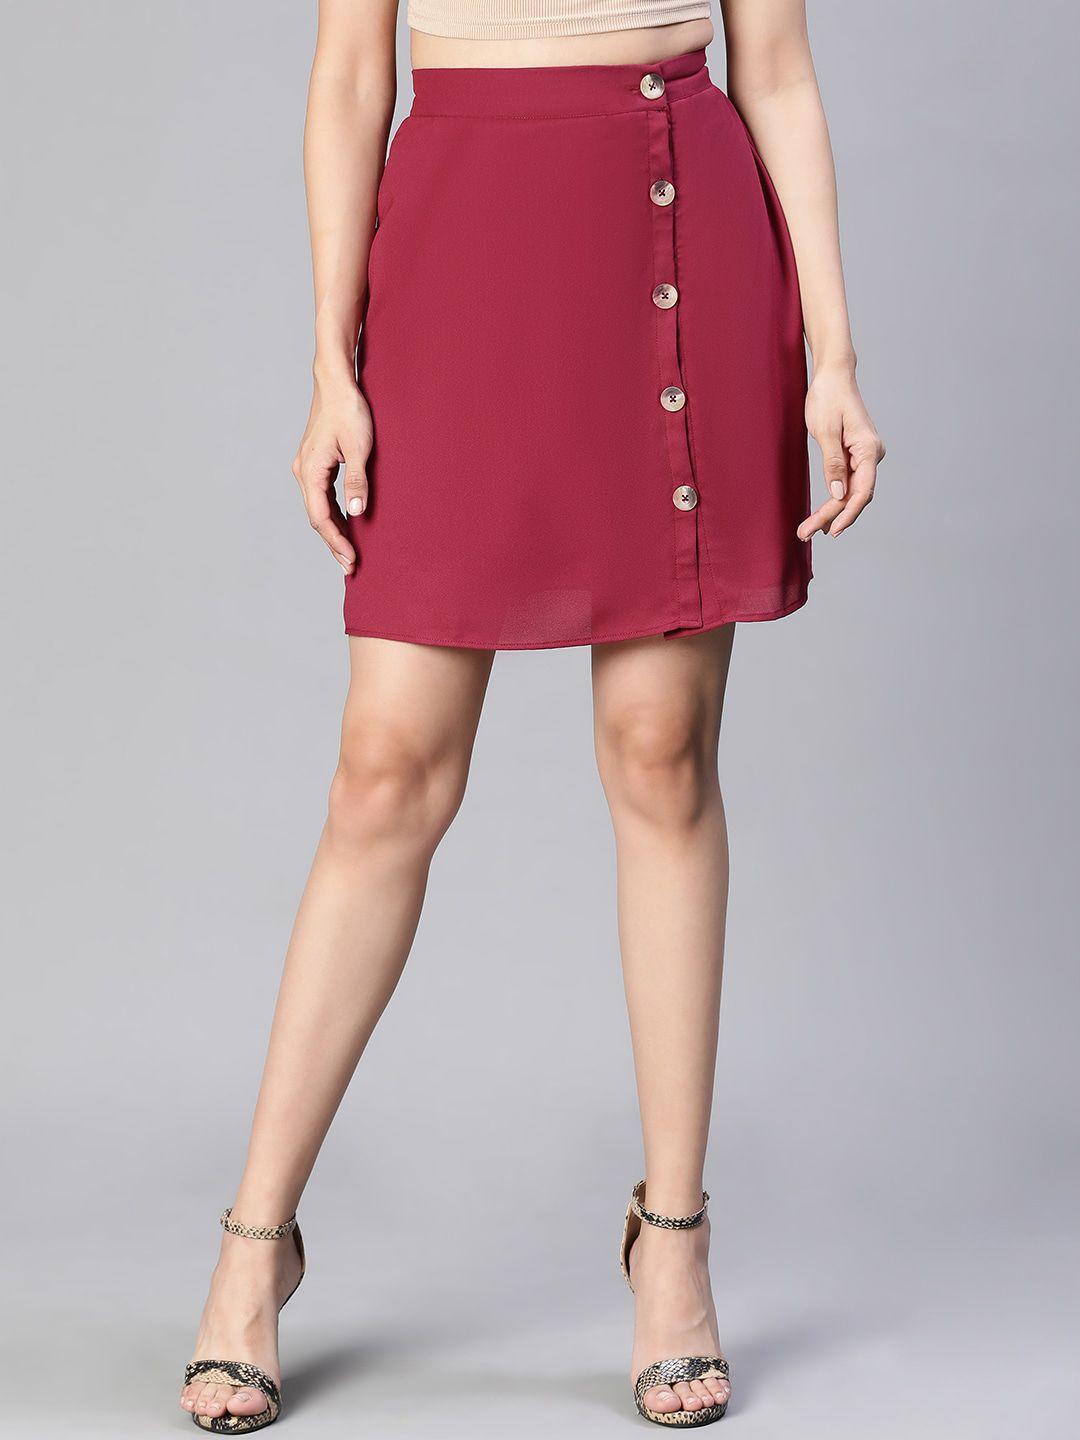 oxolloxo-button-detailed-mini-skirt